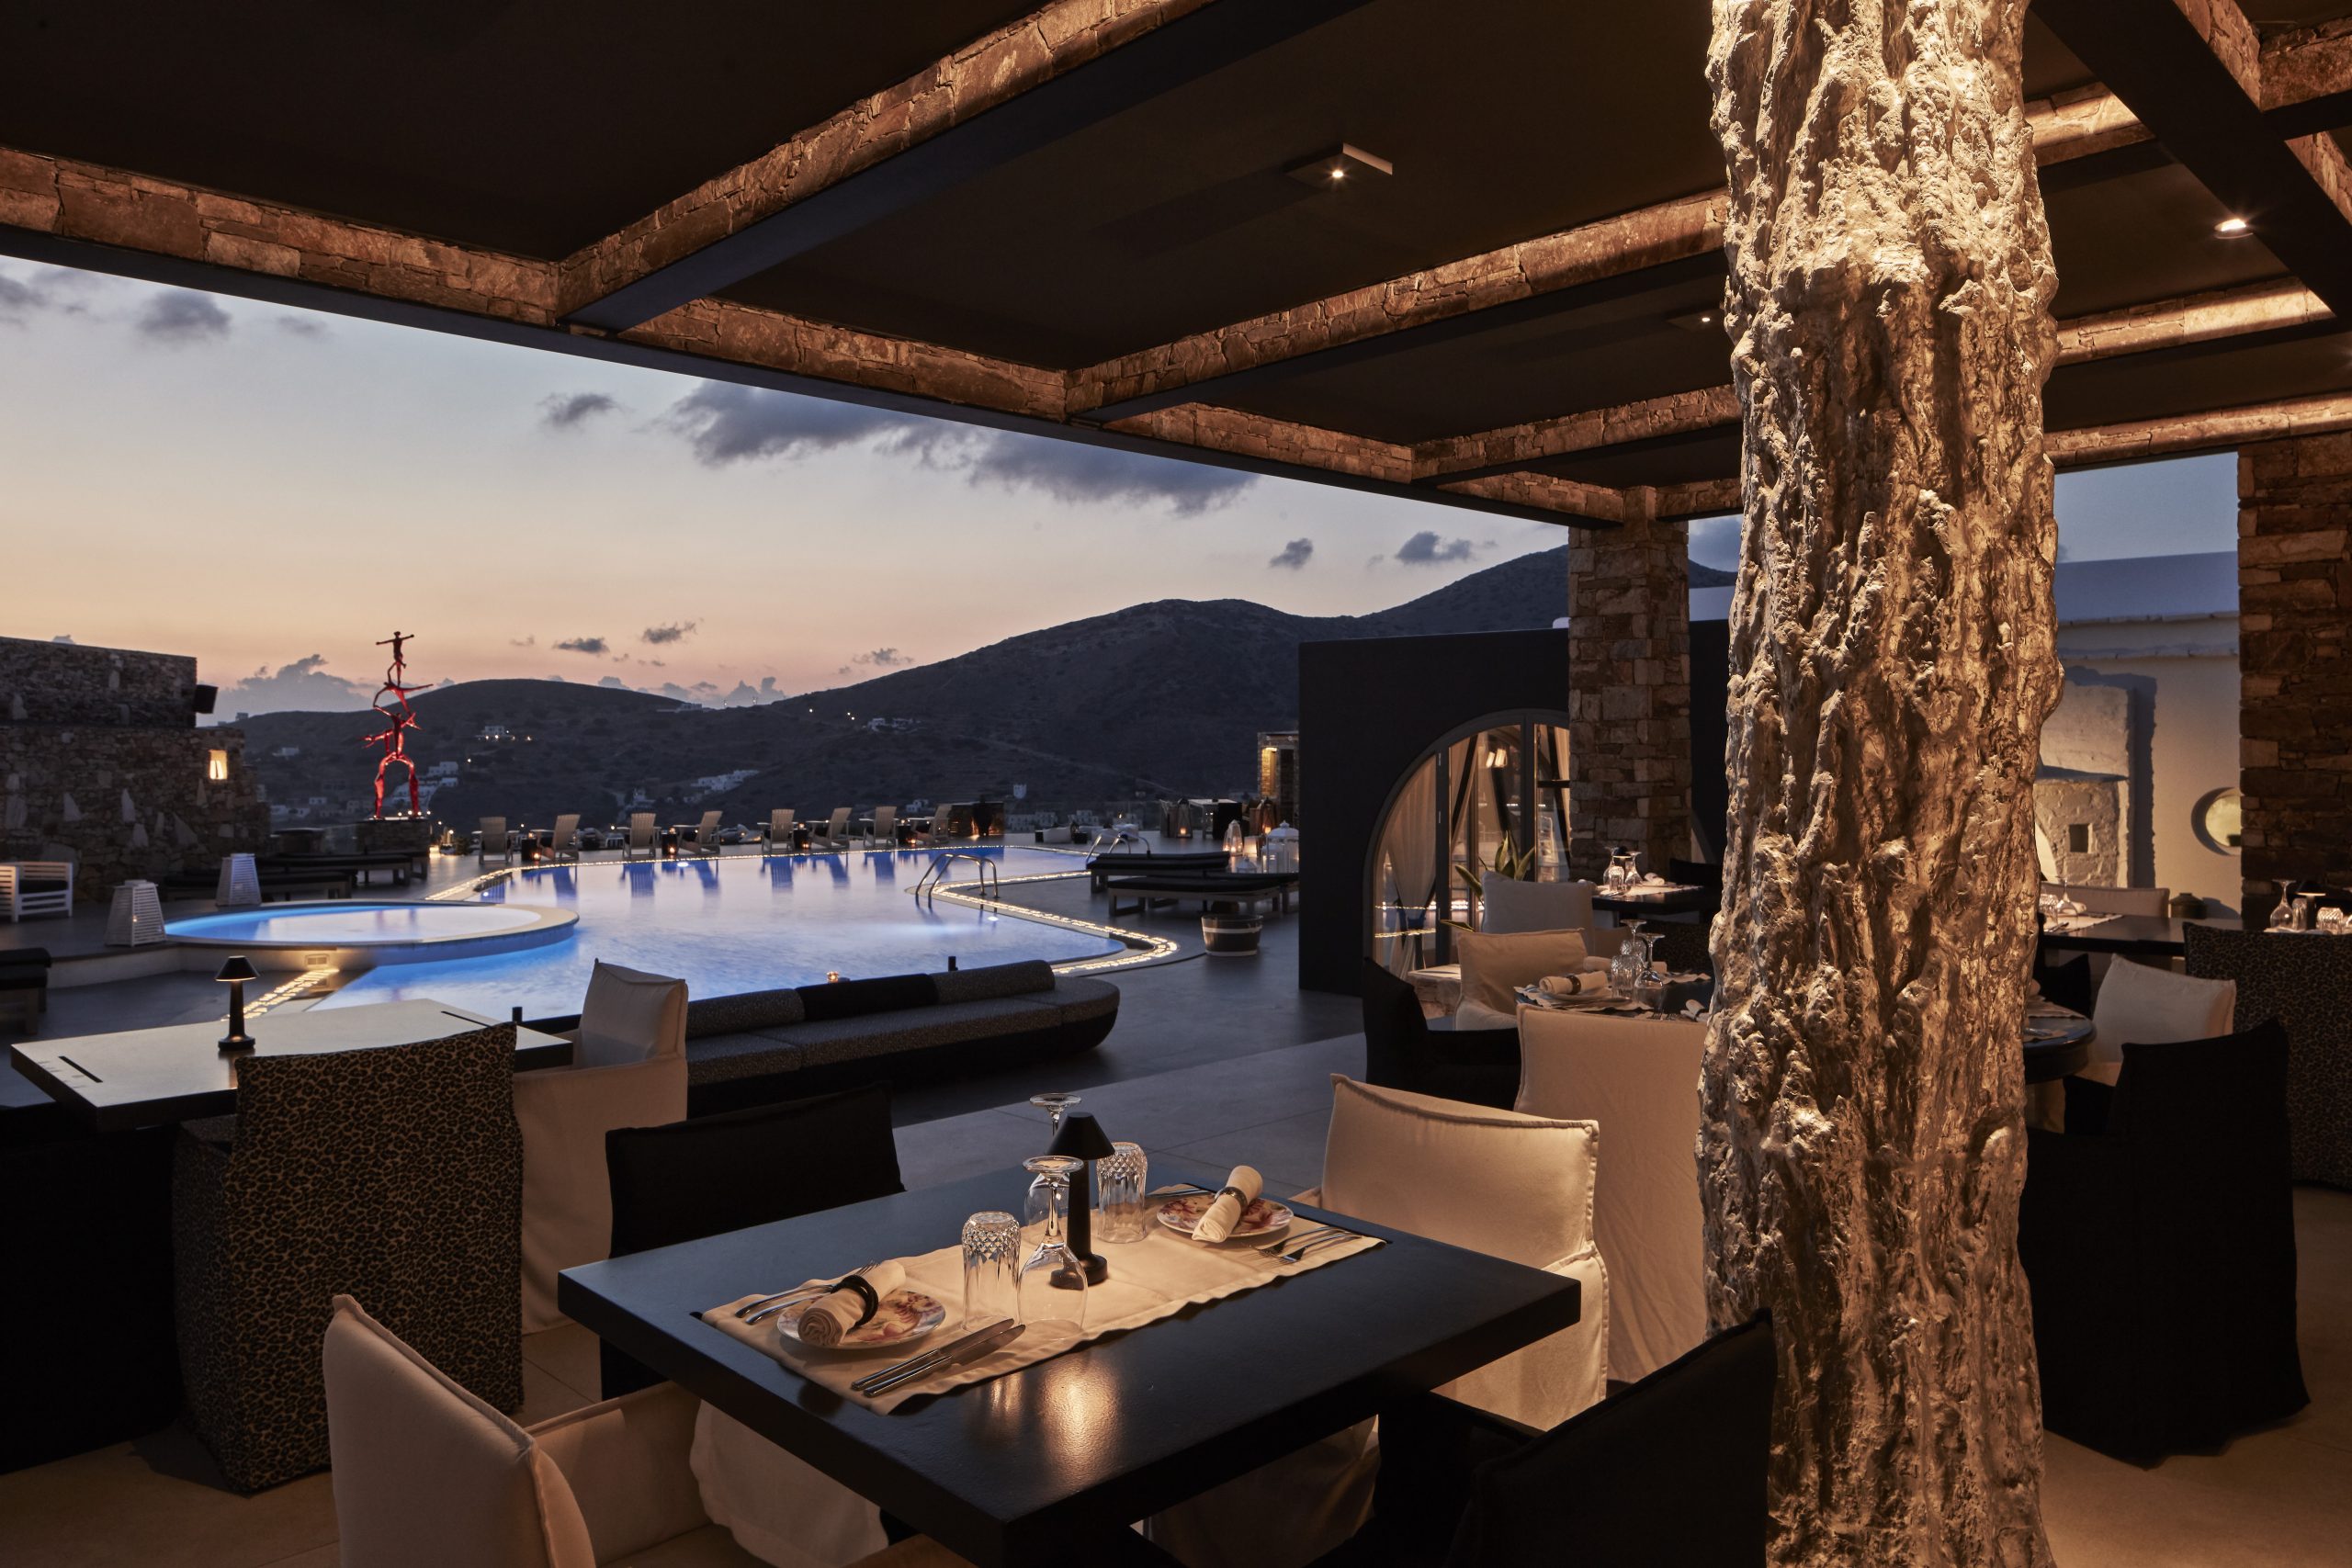 Με πανοραμική θέα το λιμάνι της Ίου και στο βάθος να αχνοφαίνεται η Σίκινος, το εστιατόριο «παίζει» με την τοπική κουζίνα των Κυκλάδων με μεσογειακές επιρροές.